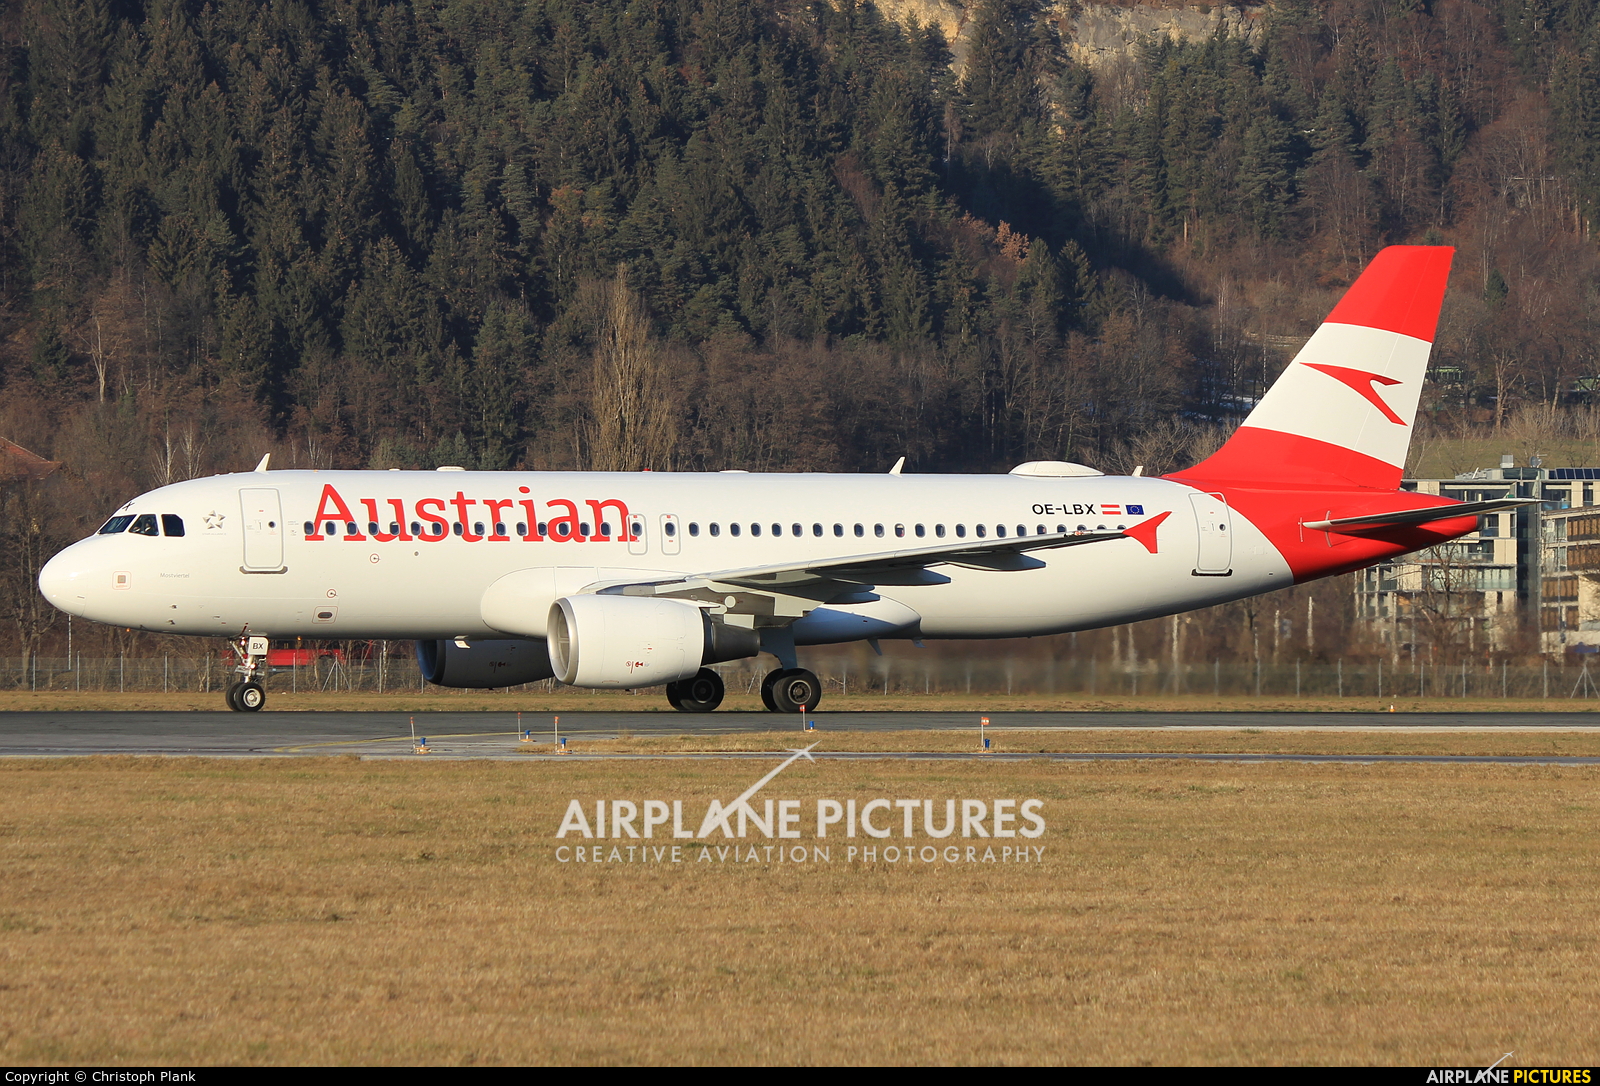 Austrian Airlines/Arrows/Tyrolean OE-LBX aircraft at Innsbruck